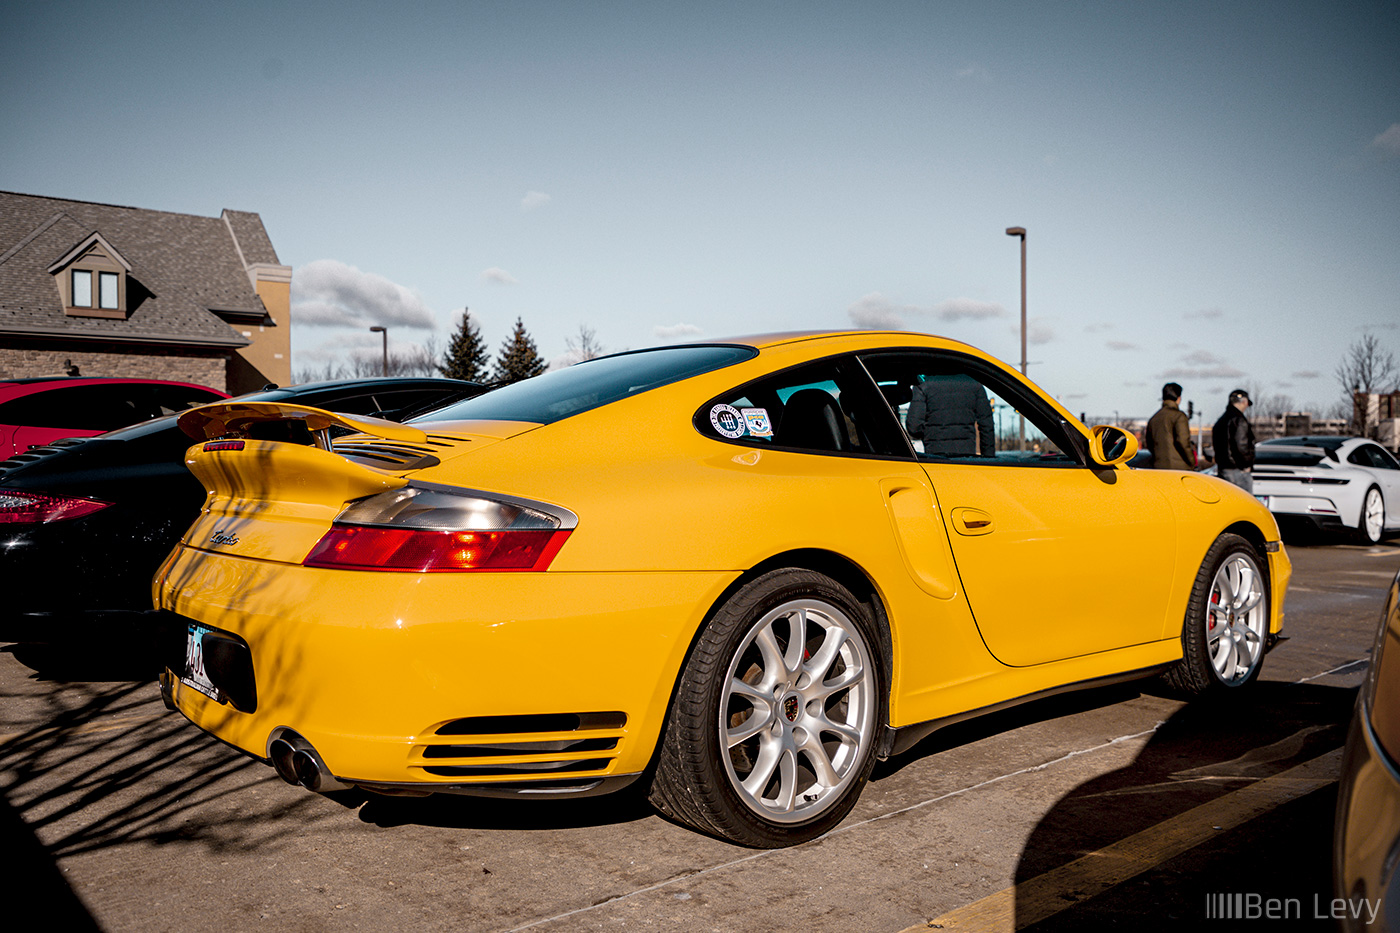 Yellow Porsche 911 Turbo at Porsches & Pastries